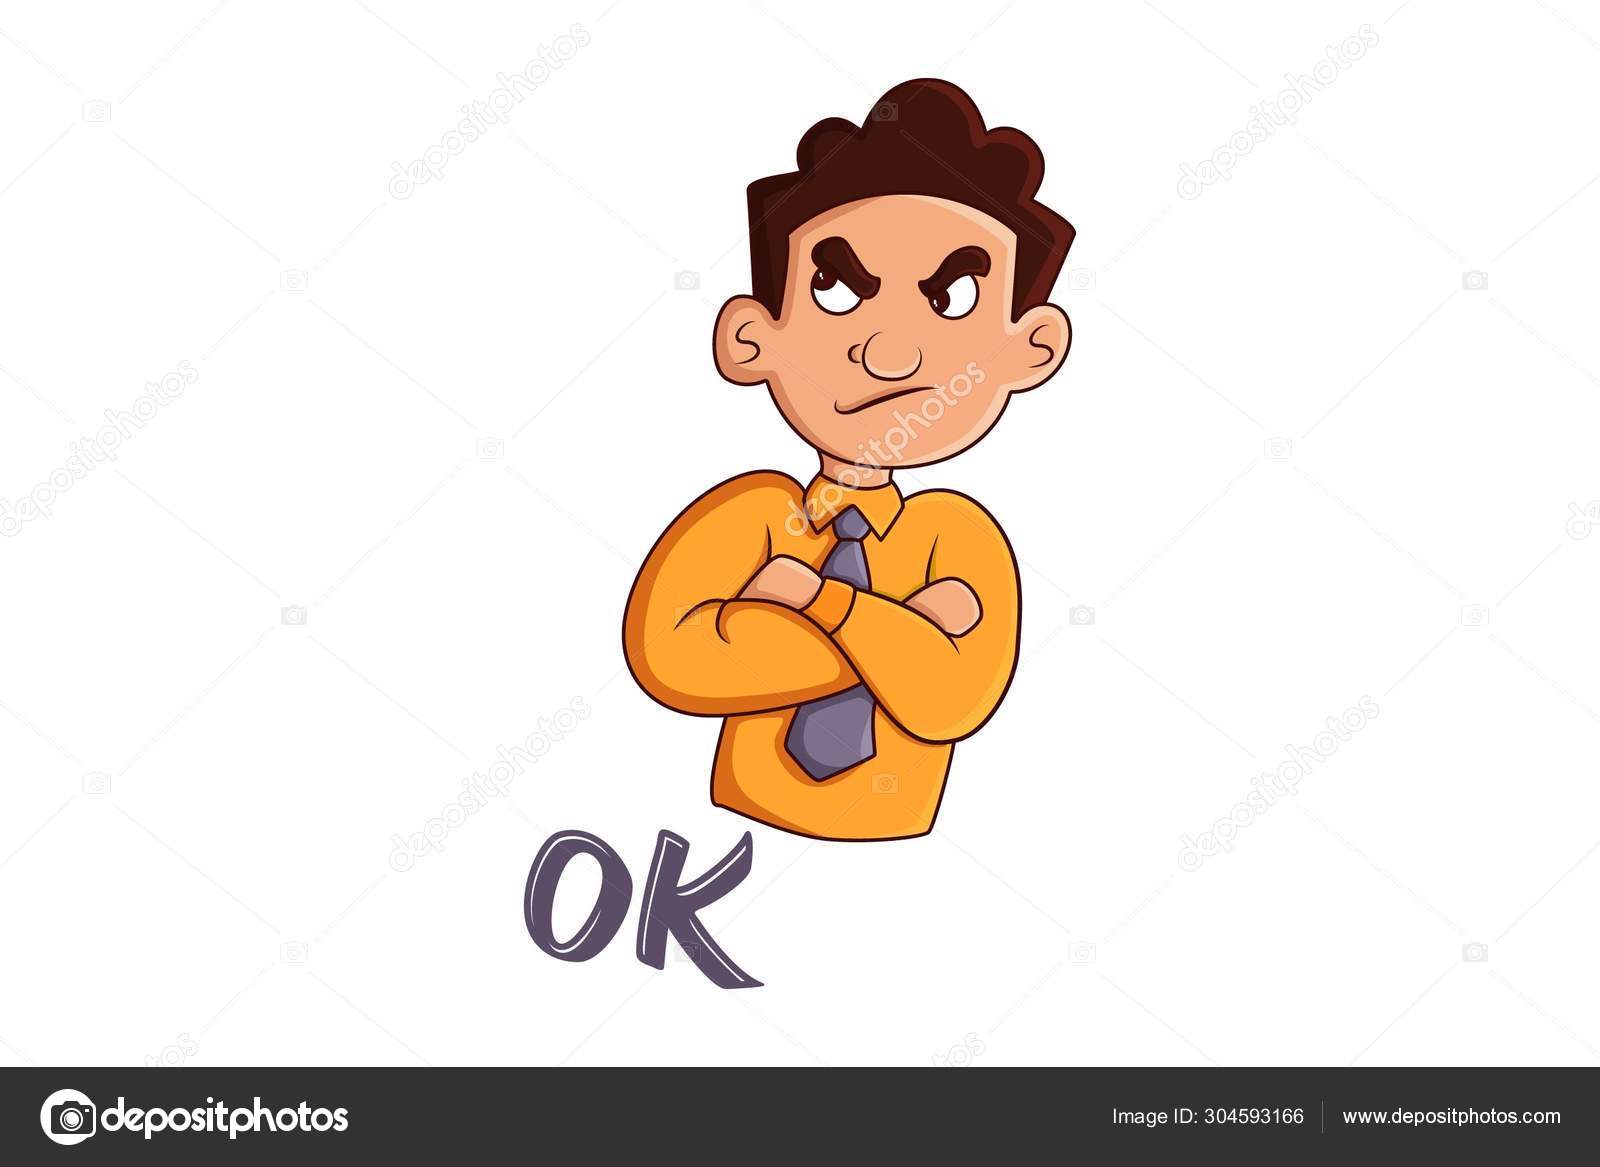 Cartoon man saying ok Vector Art Stock Images | Depositphotos